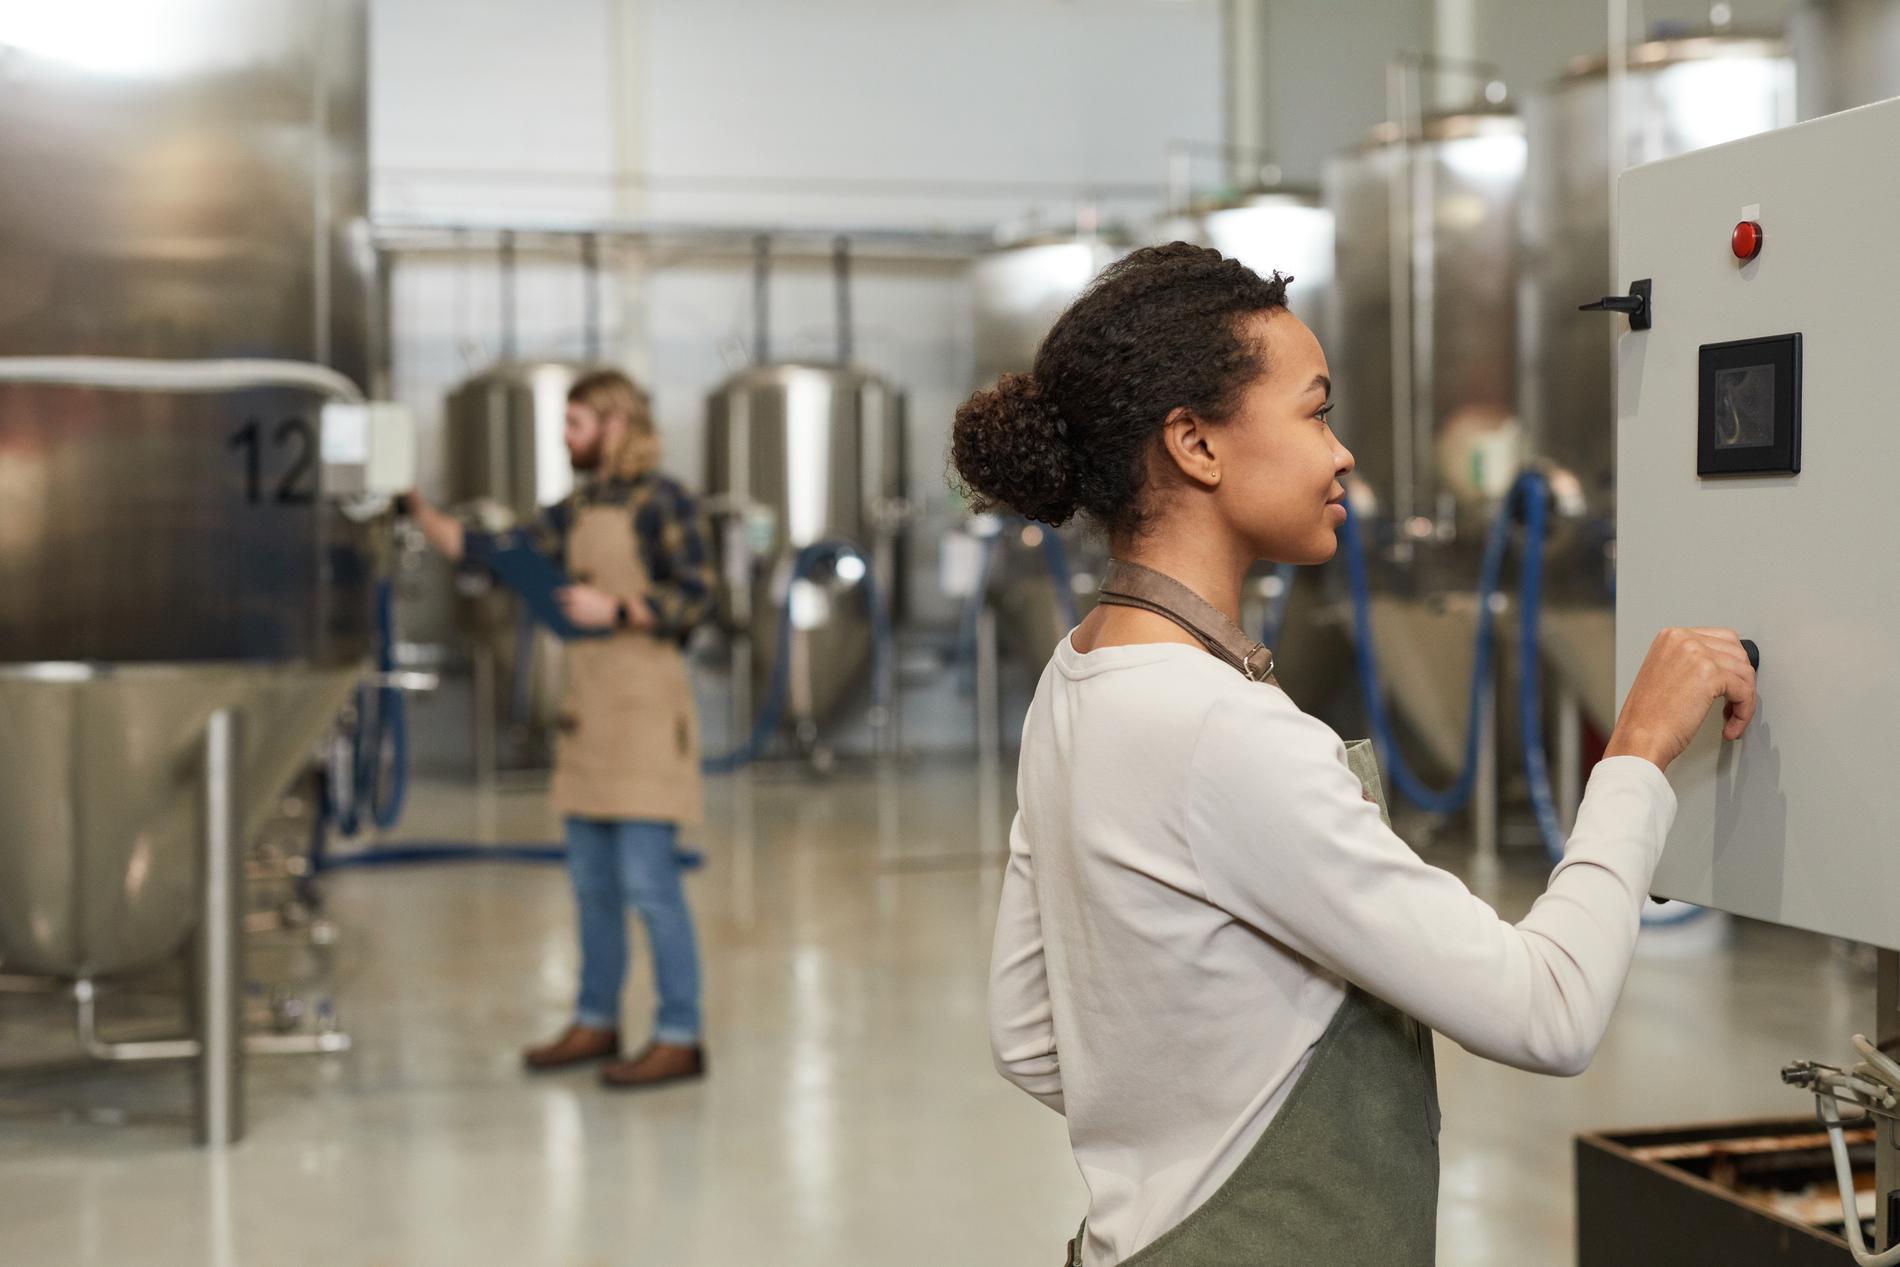 Prova ölsorterna, gå en rundvandring i bryggeriet – och lär dig grunderna i ölbryggning. 